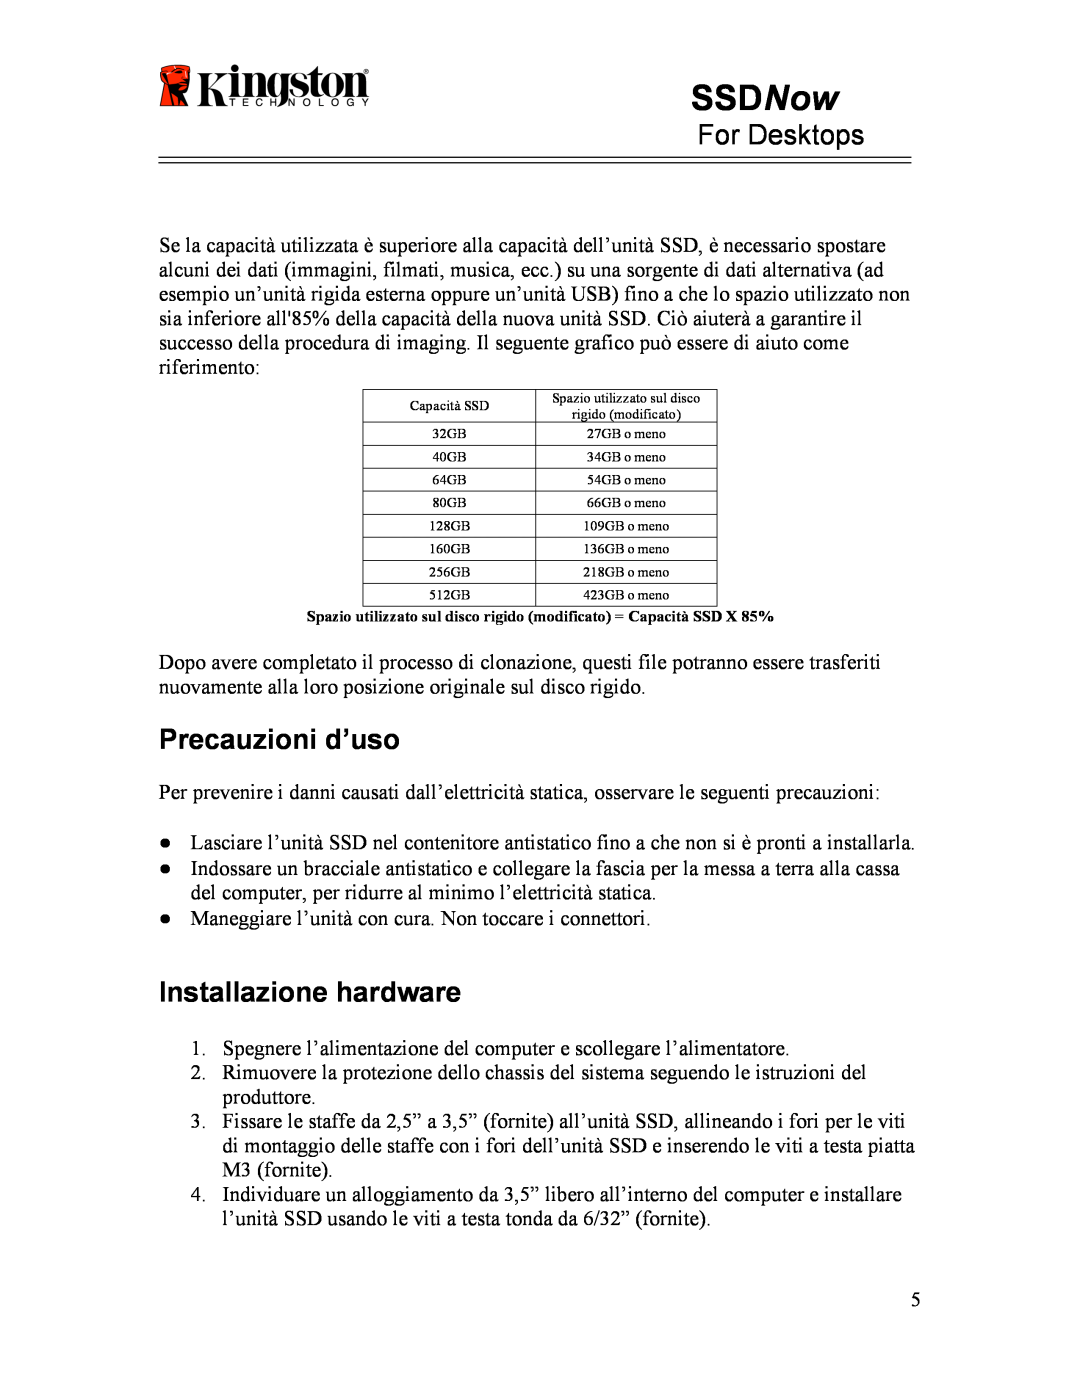 Kingston Technology 07-16-2009 manual Precauzioni d’uso, Installazione hardware, SSDNow, For Desktops 